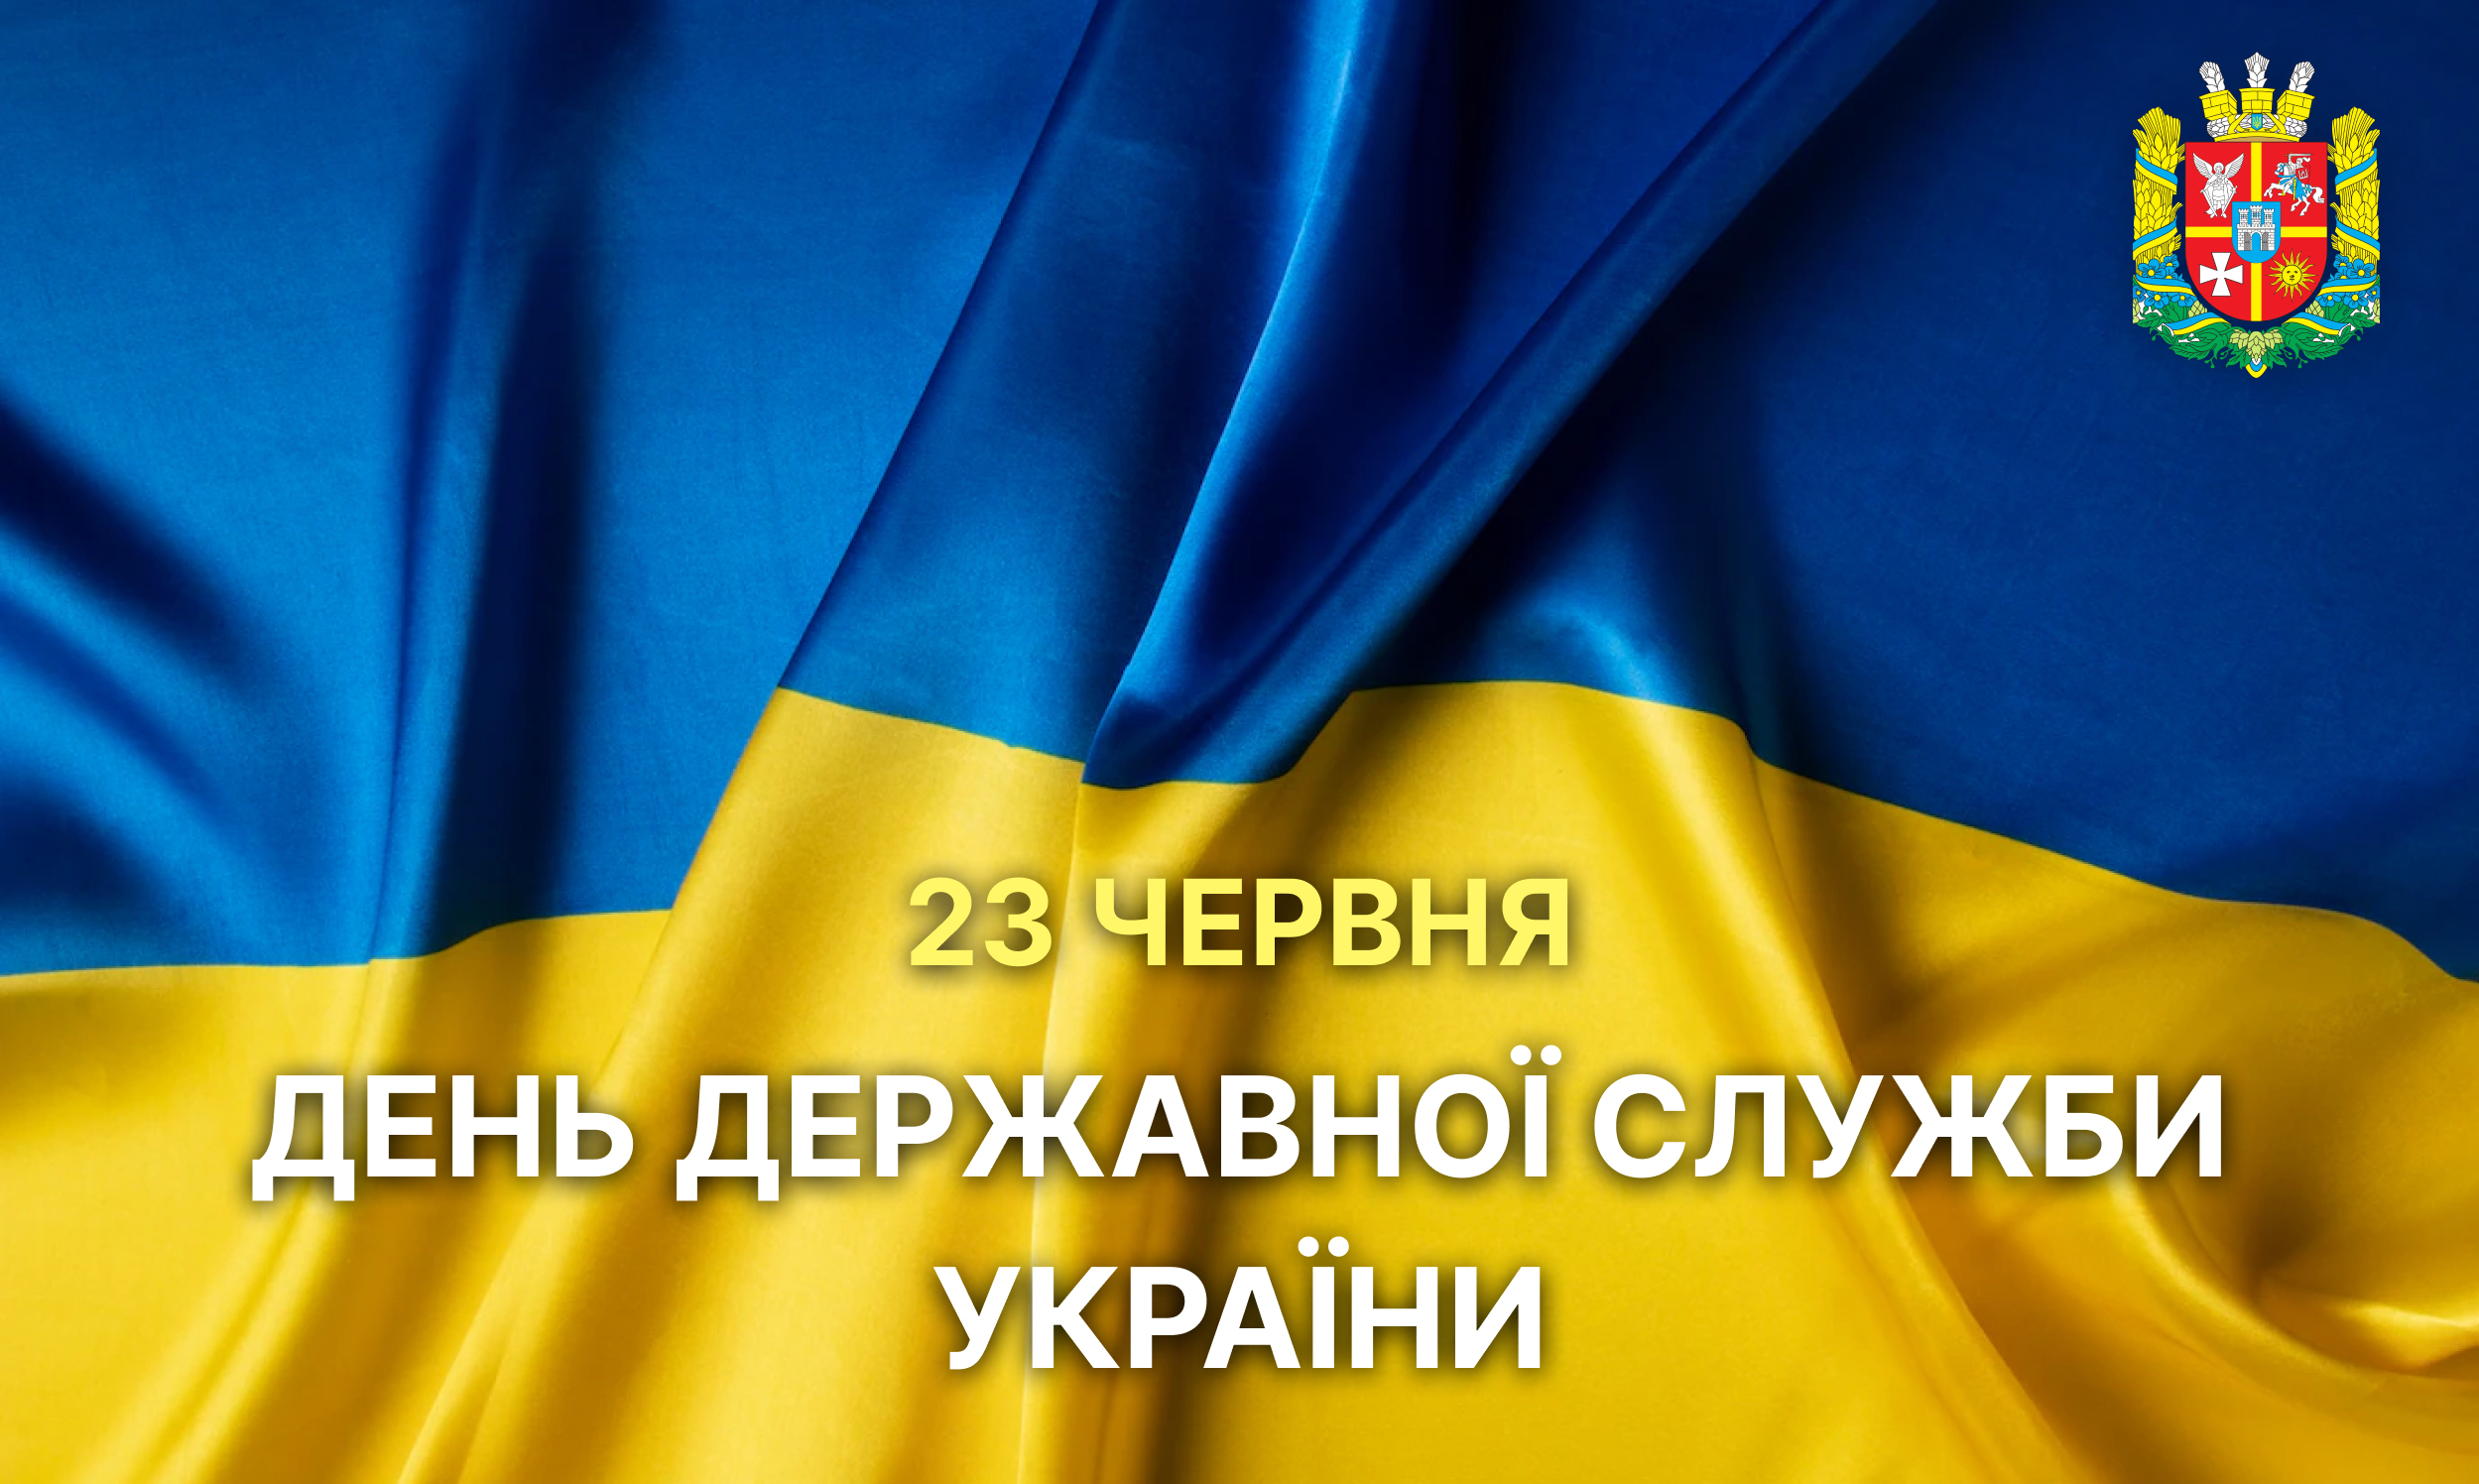 Вітаємо з Днем Державної служби України!